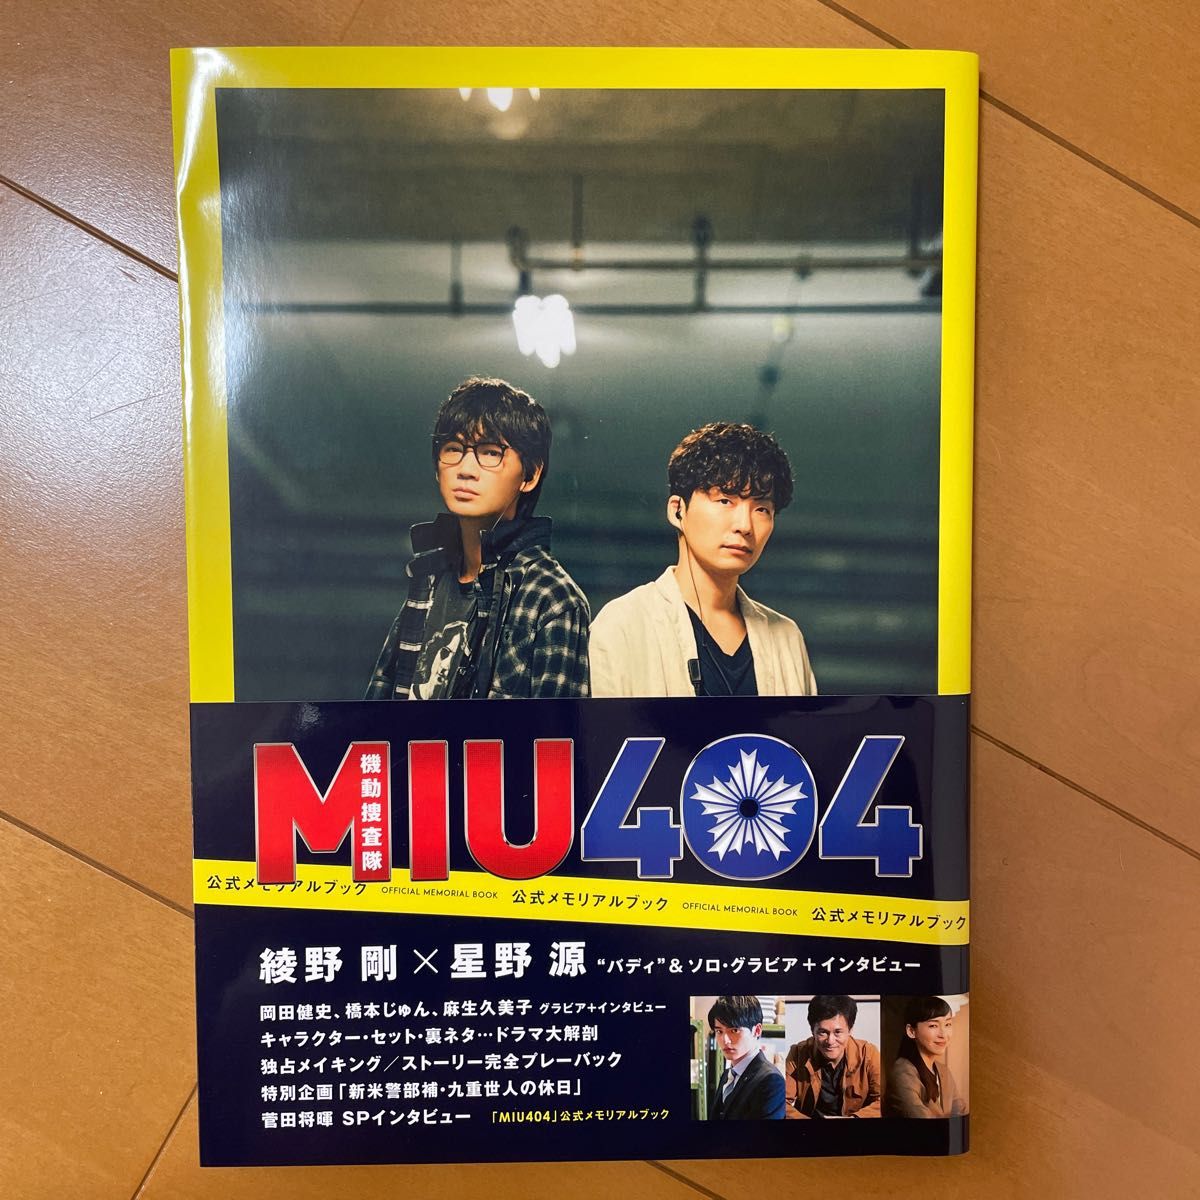 MIU404 公式メモリアルブック